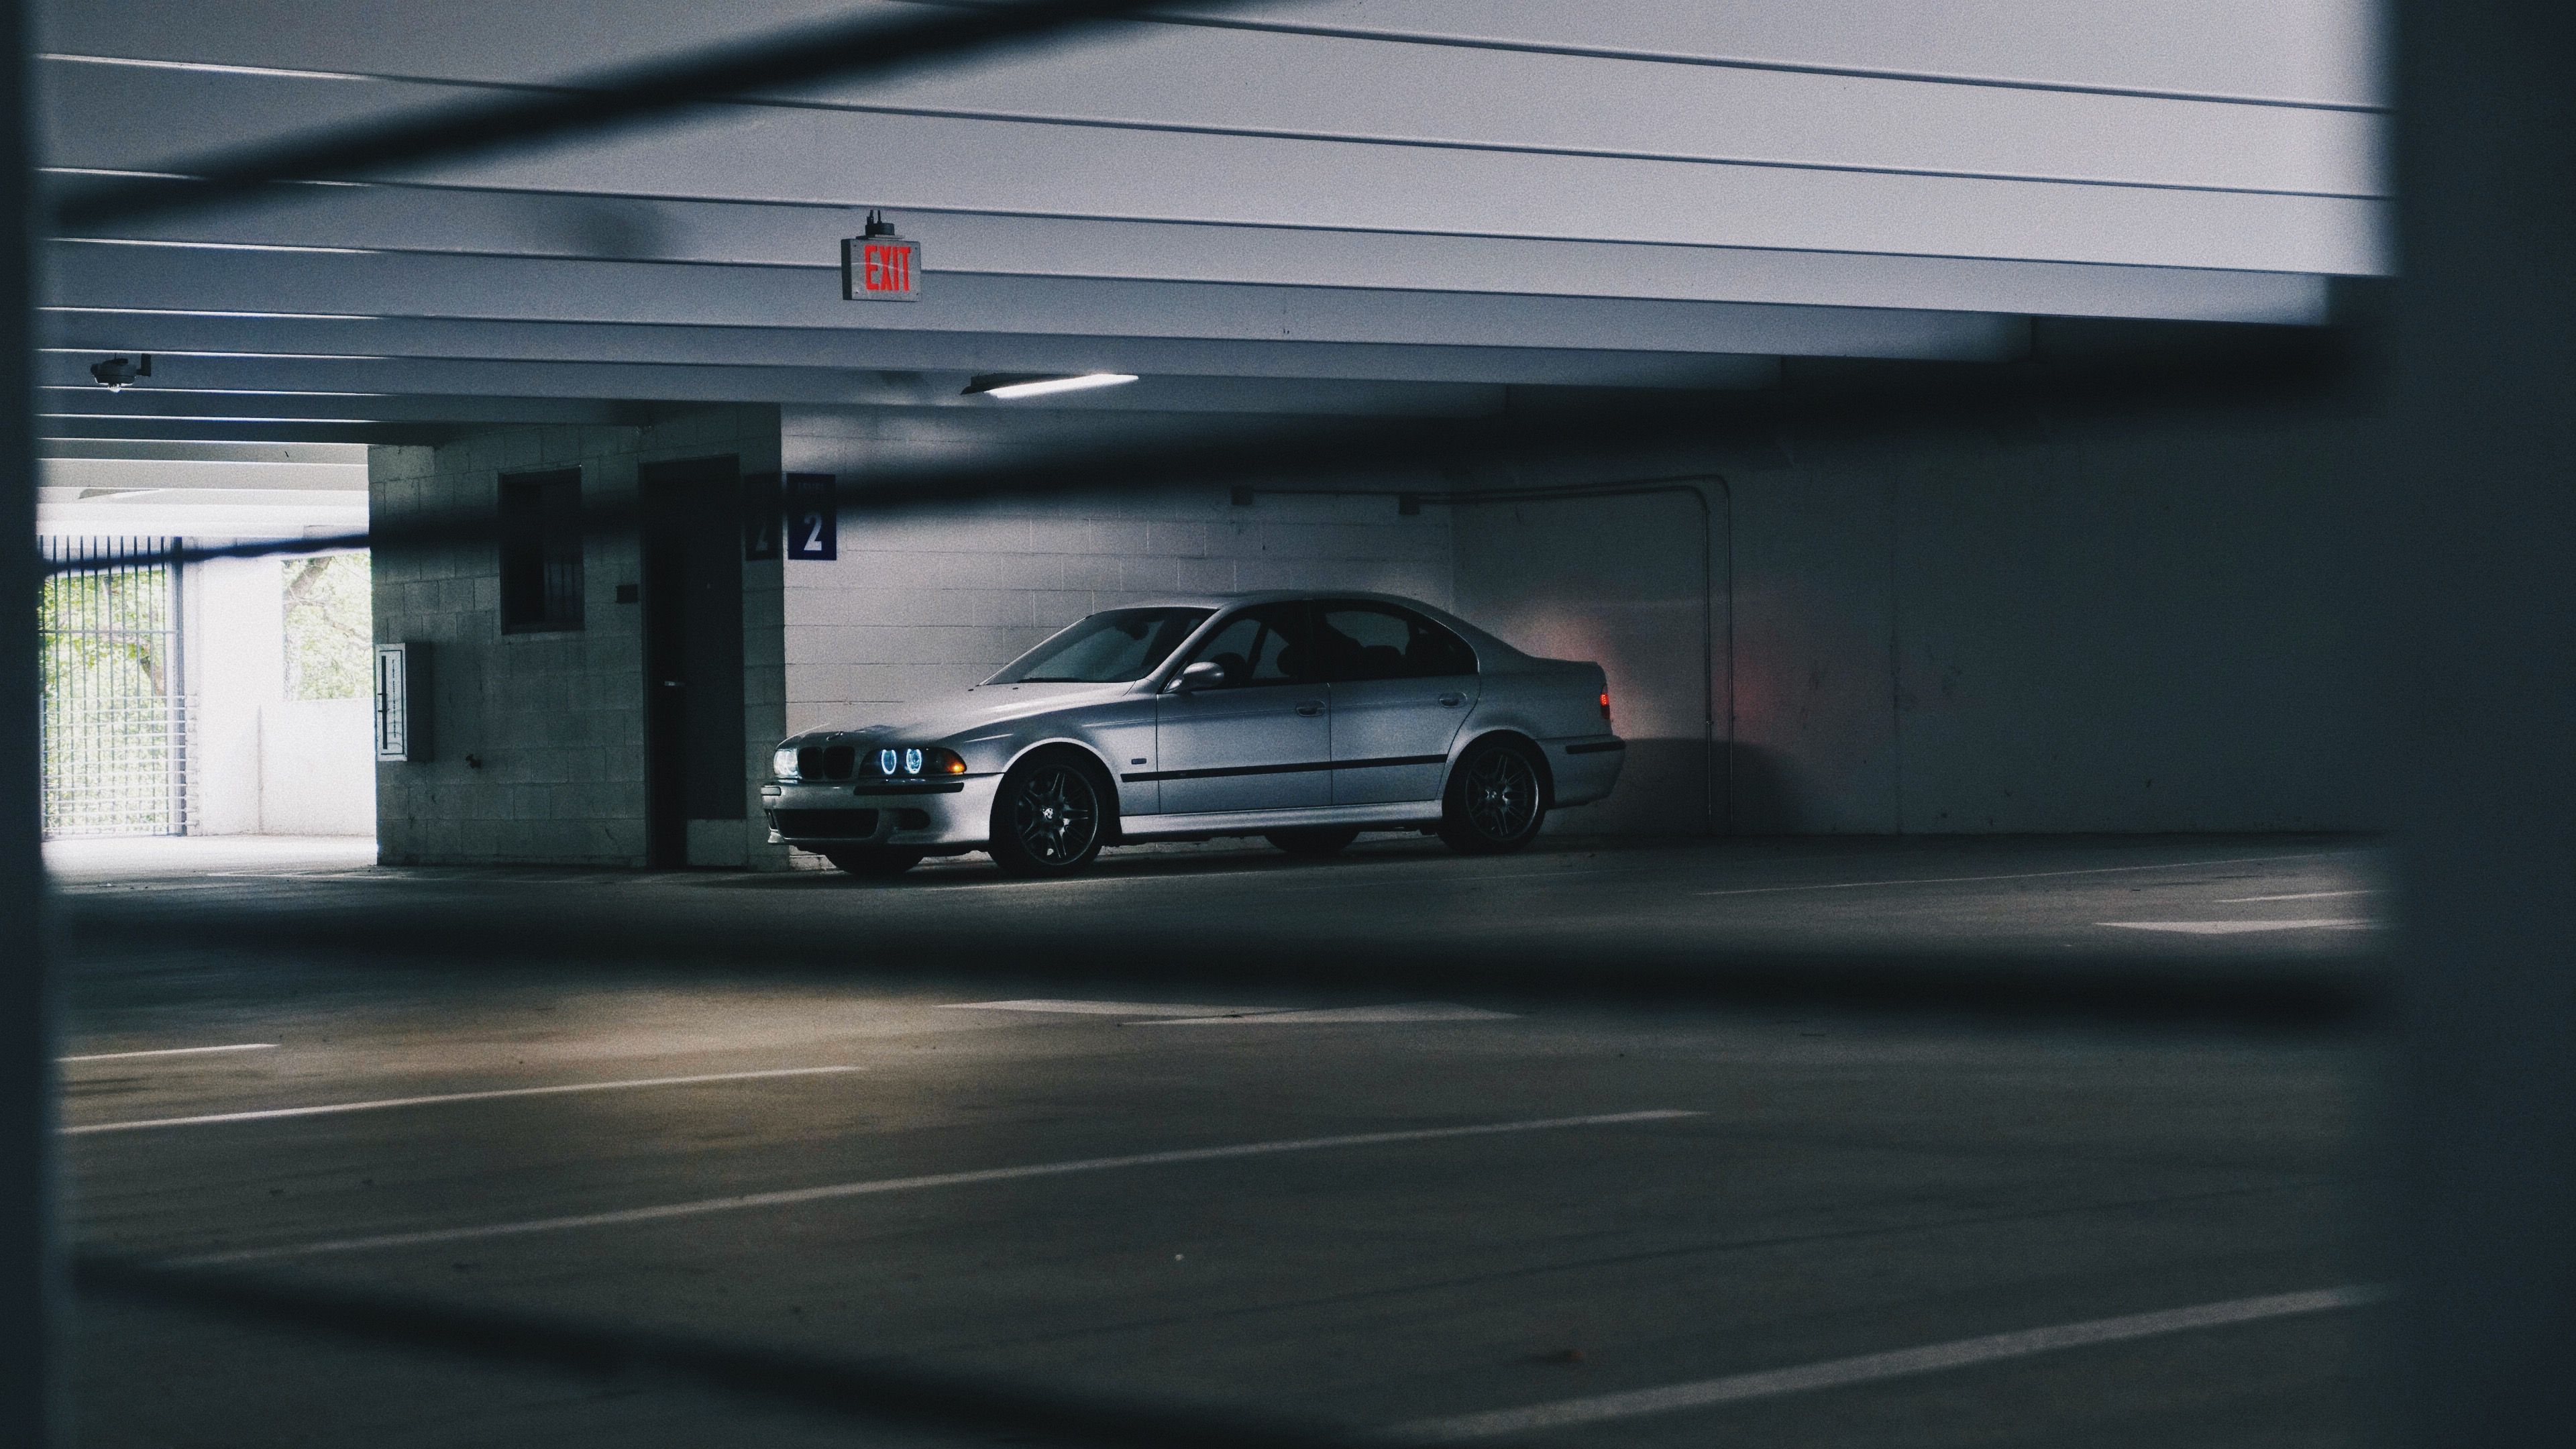 E39 M5 Parking Garage